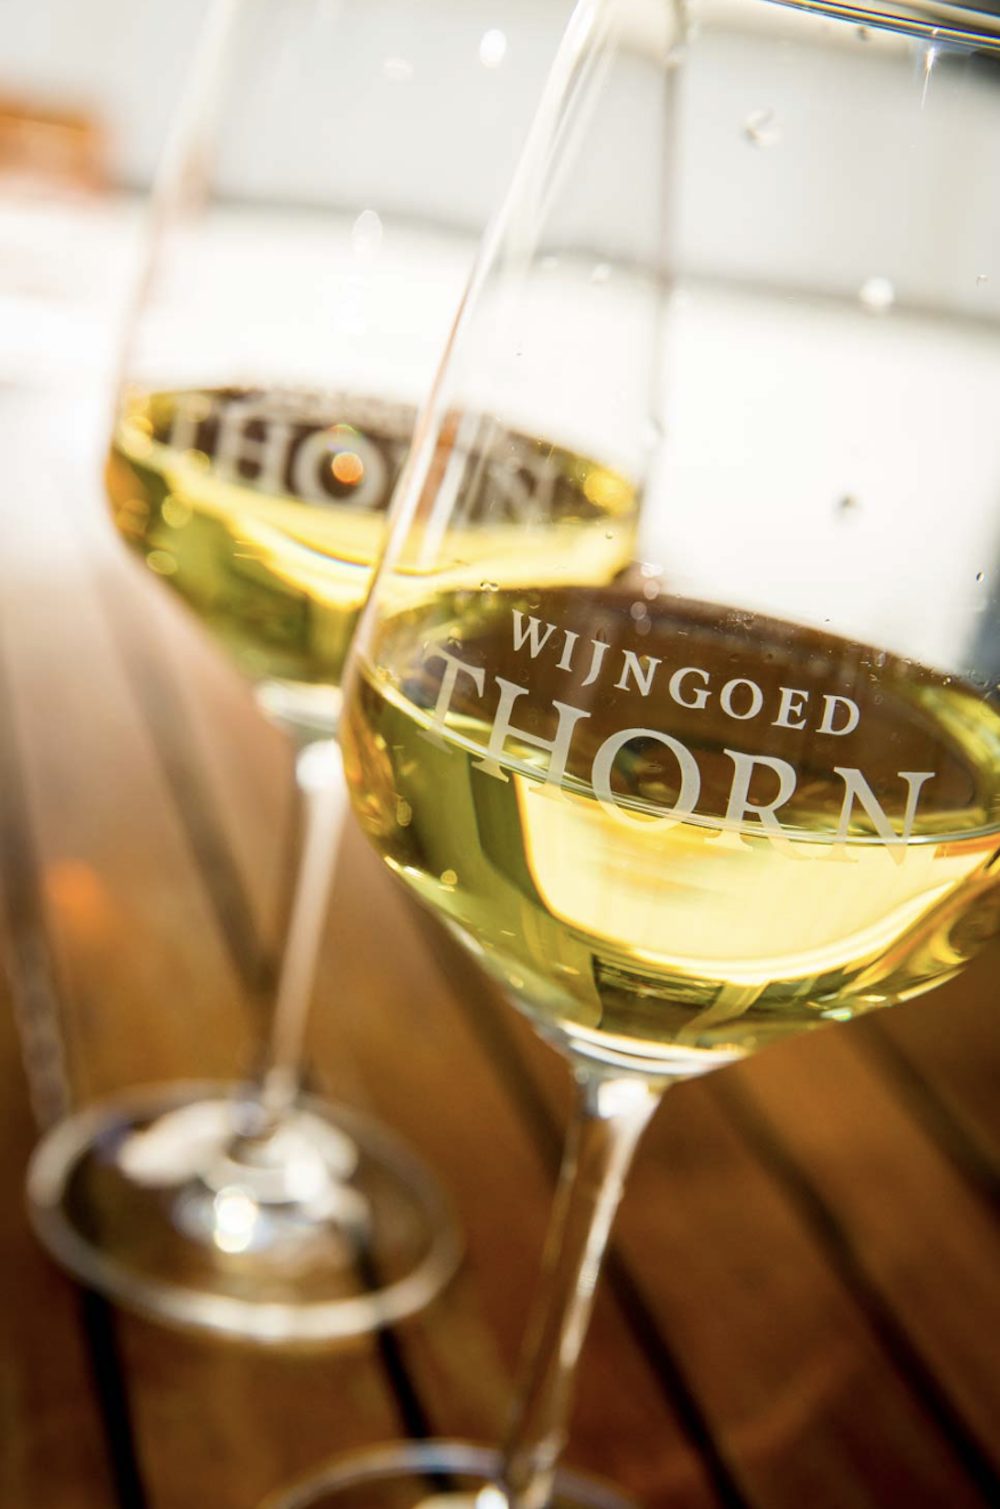 Mooie wijngaard in Limburg, Wijngoed Thorn